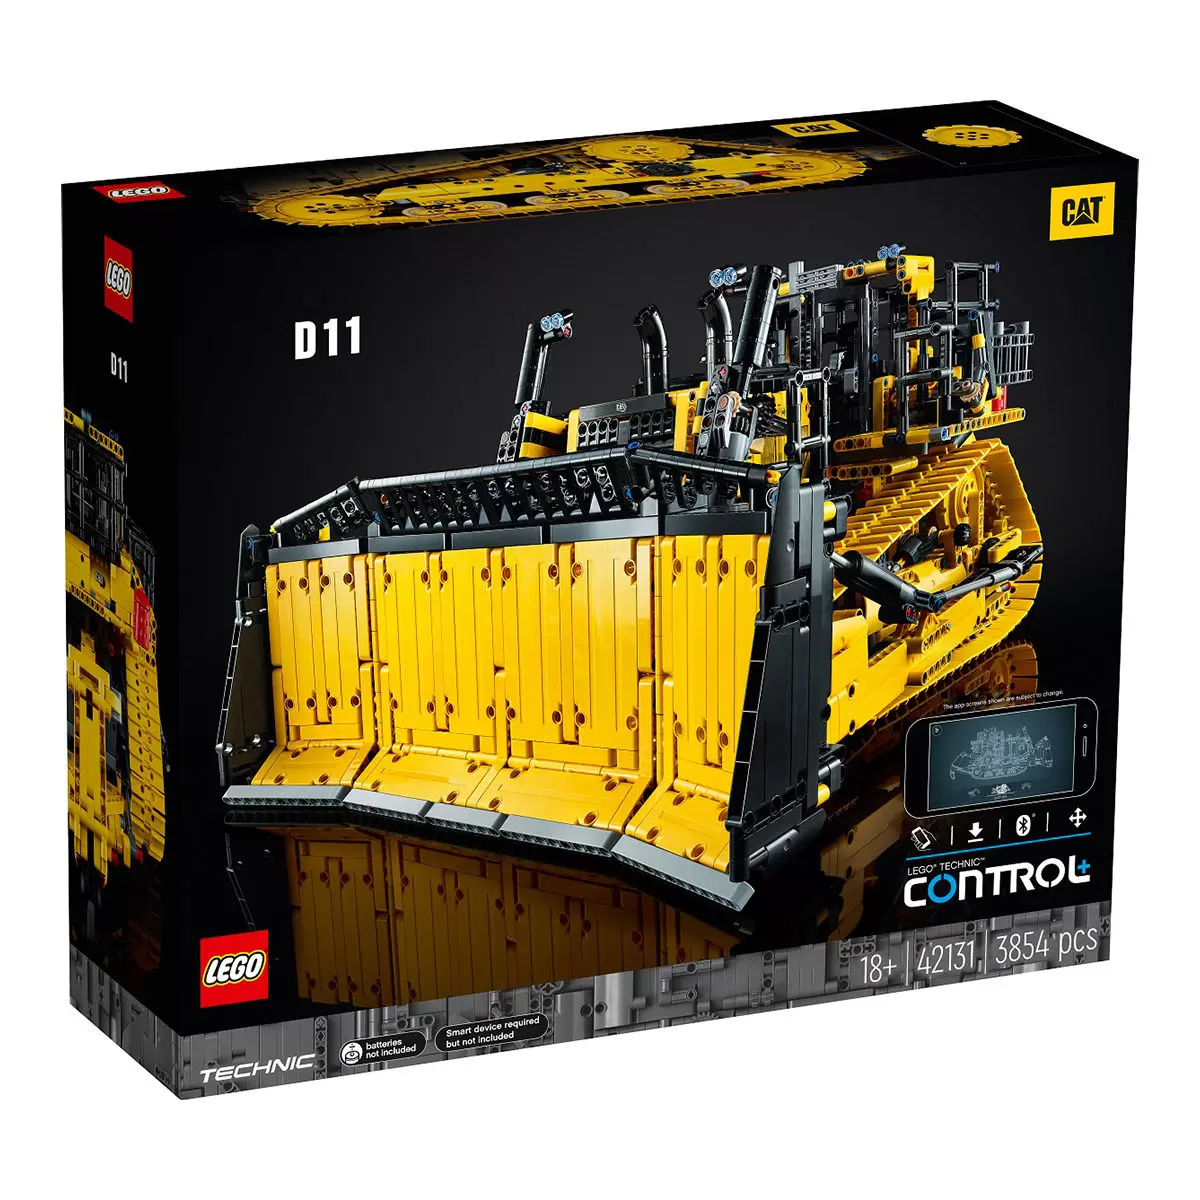 LEGO 科技系列 遙控 Cat D11 推土機 42131